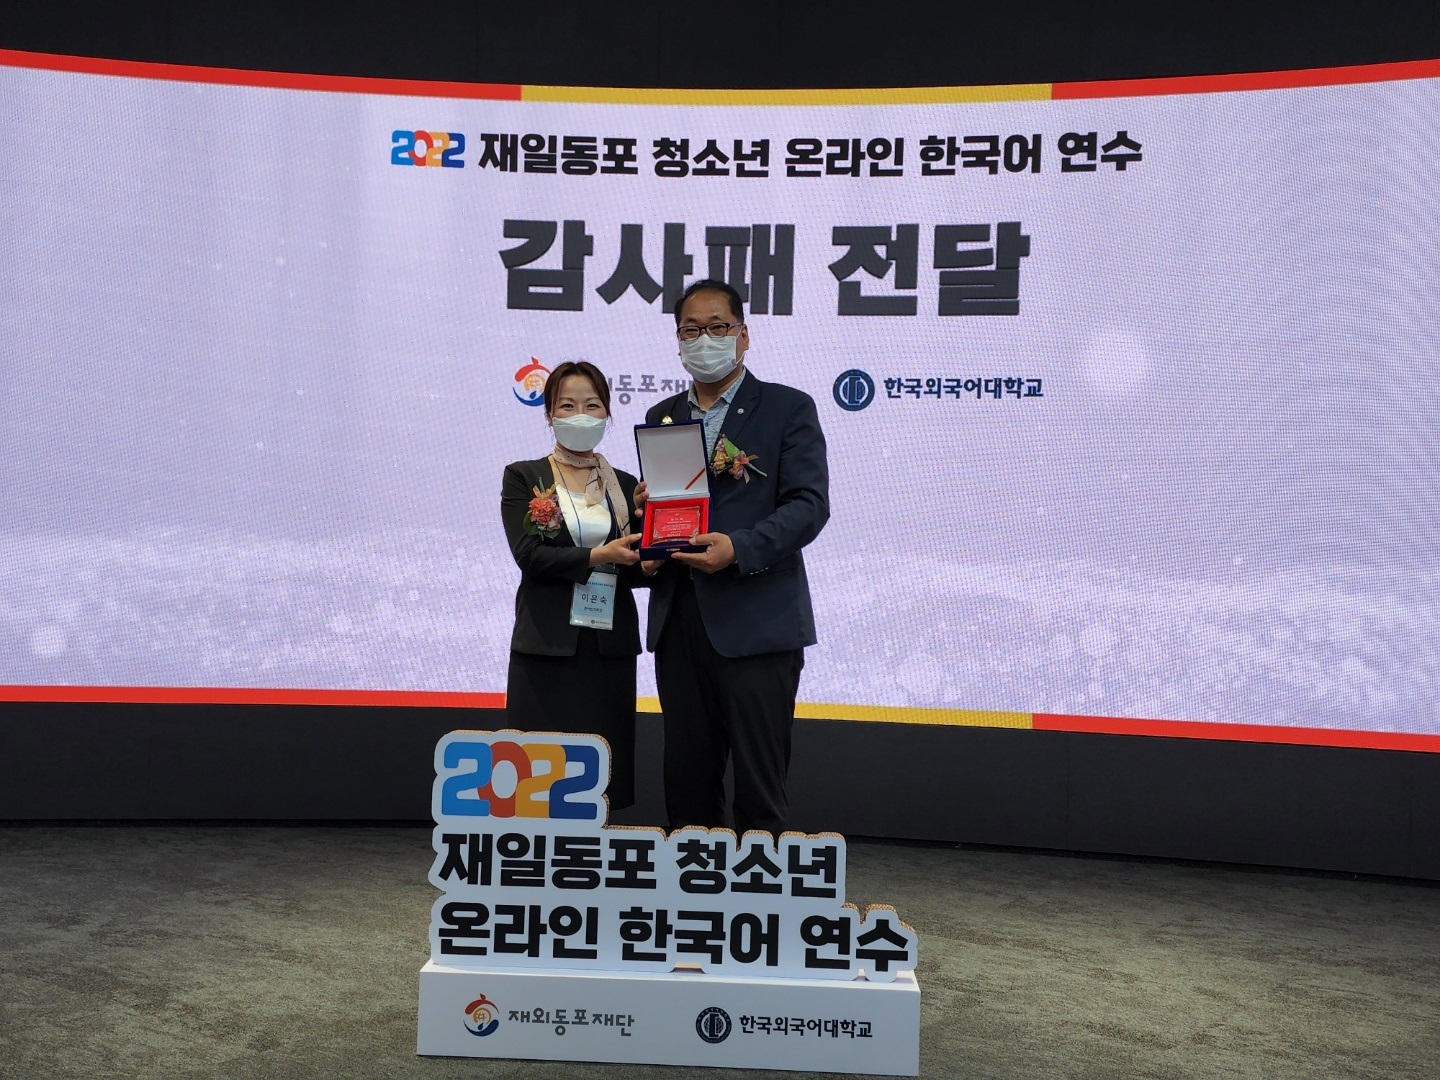 Председатель Ассоциации школ хангыля в Японии получает почетную грамоту на выпускной церемонии в Dongdaemun Design Plaza (DDP)